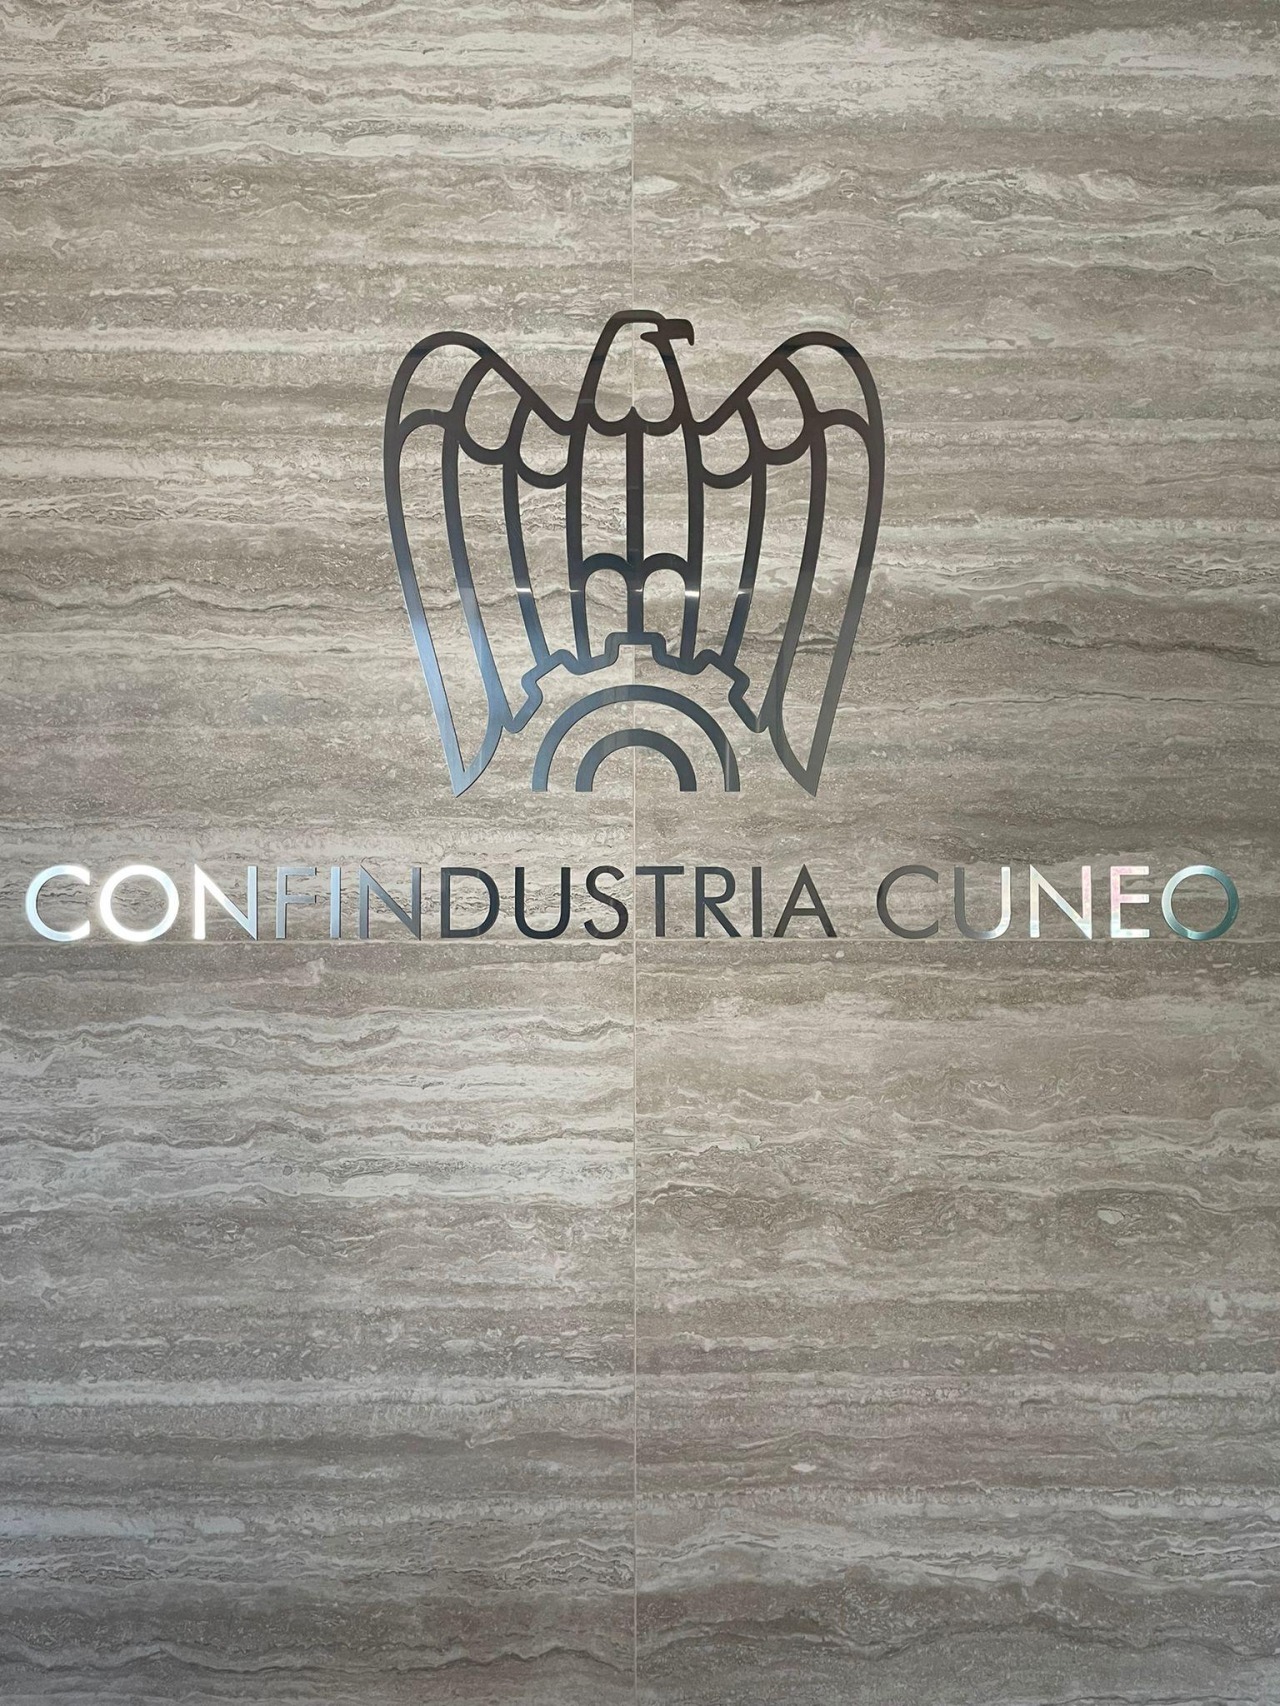 Cuneo_immagine_logo